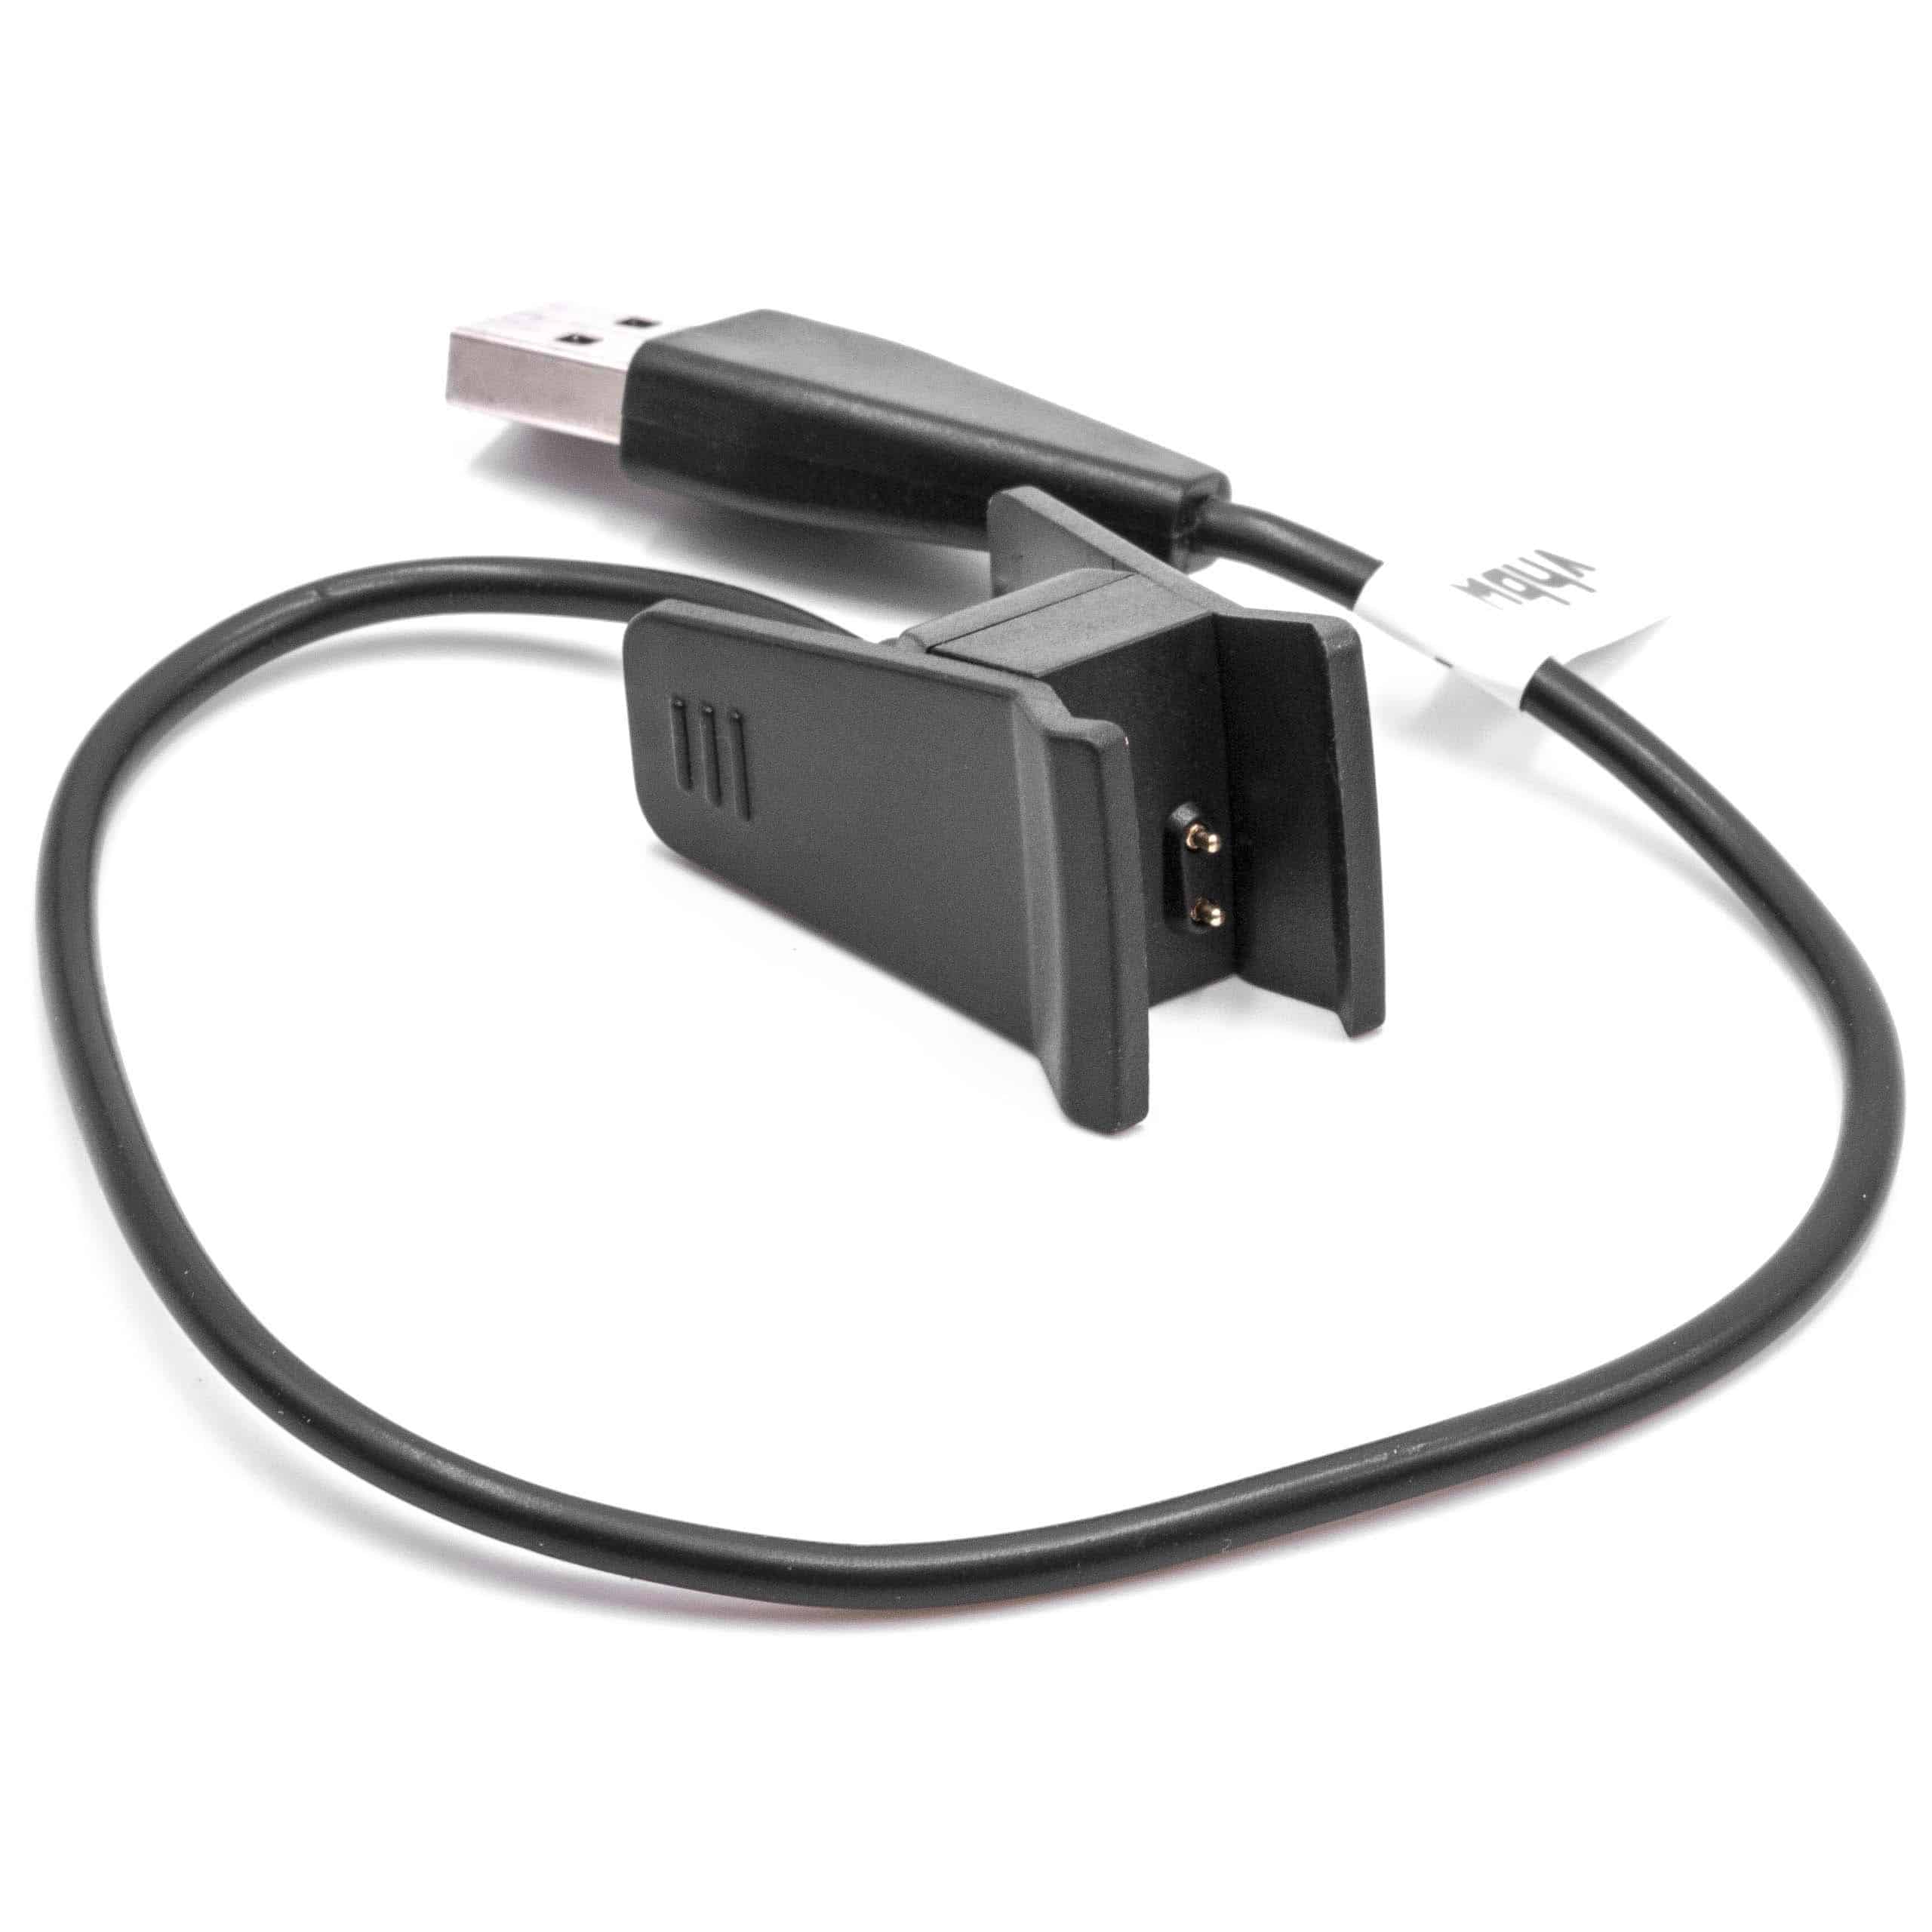 Ladekabel passend für Fitbit Alta - 26 cm Kabel, Mit Reset-Funktion, USB-Stecker